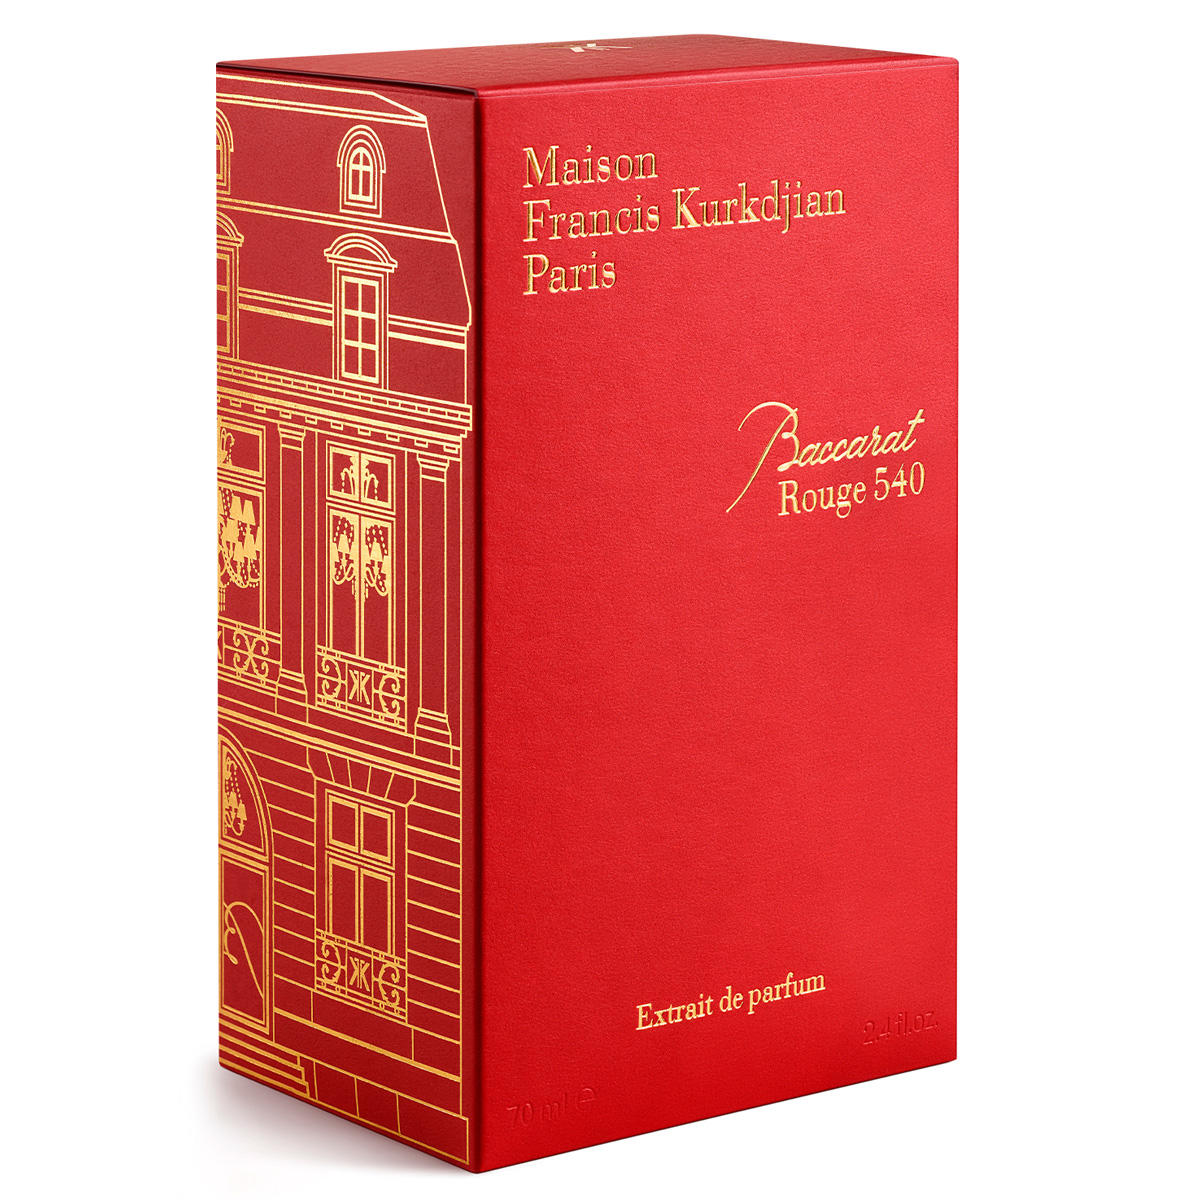 Maison Francis Kurkdjian Paris Baccarat Rouge 540 Extrait de Parfum 70 ml - 4